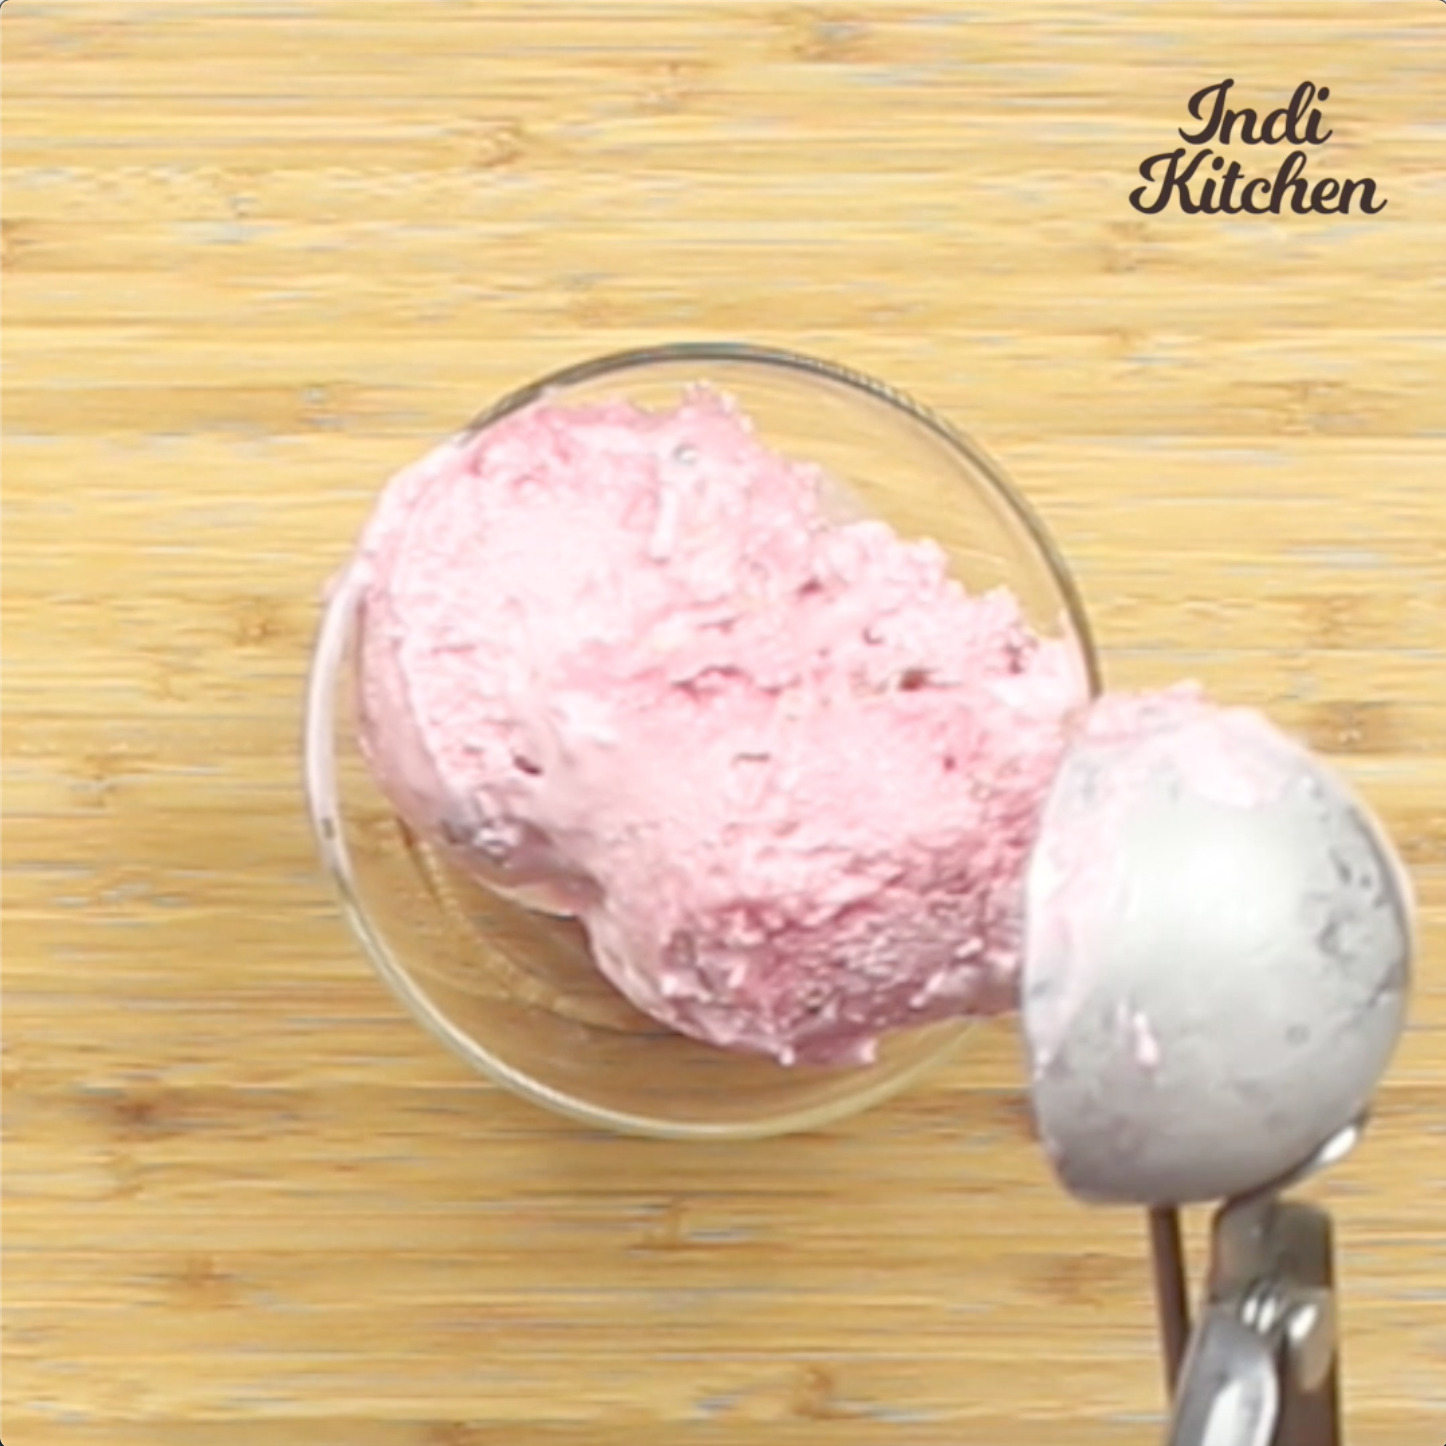 how to make soft gulkand ice cream